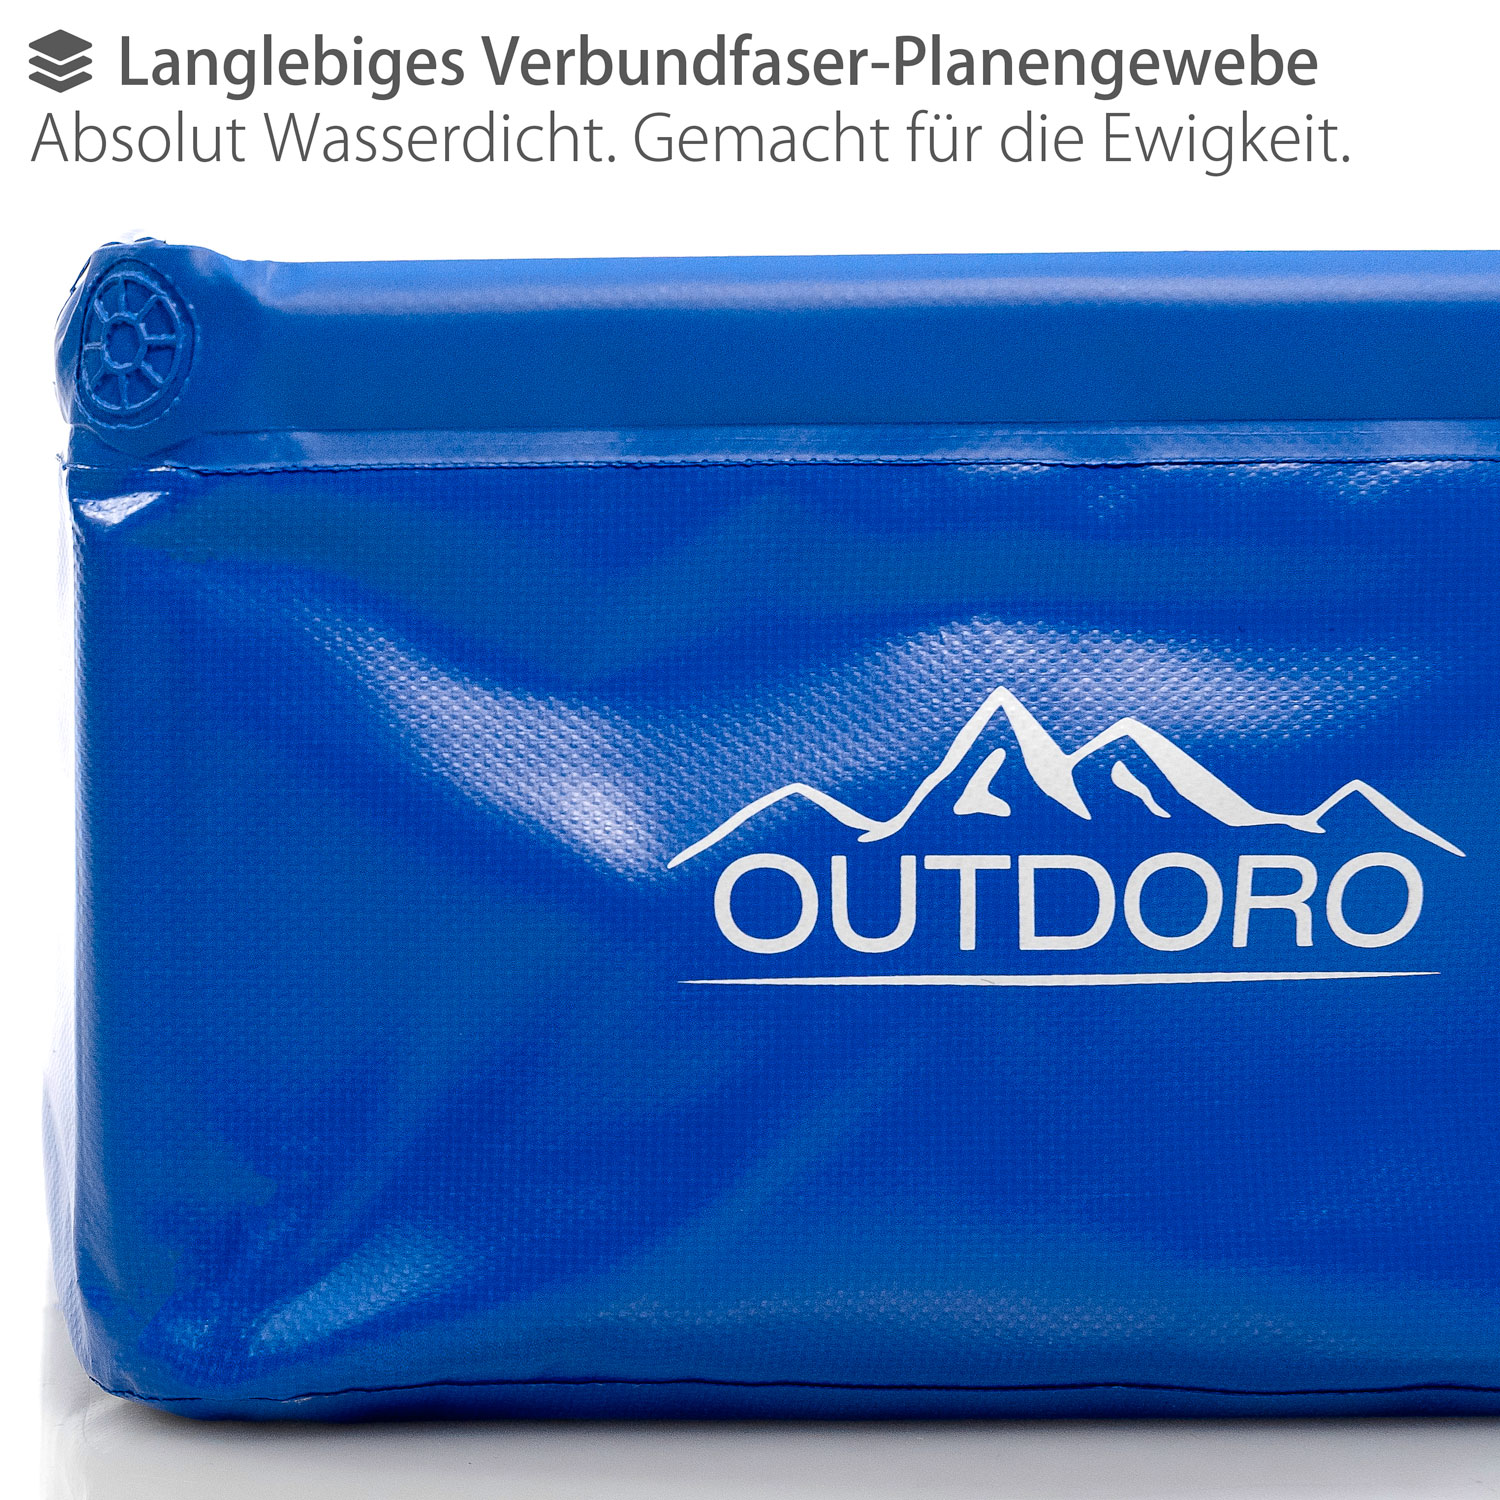 Outdoro Faltschüssel Groß - 16 Liter - Inklusive Zusatz-Tasche